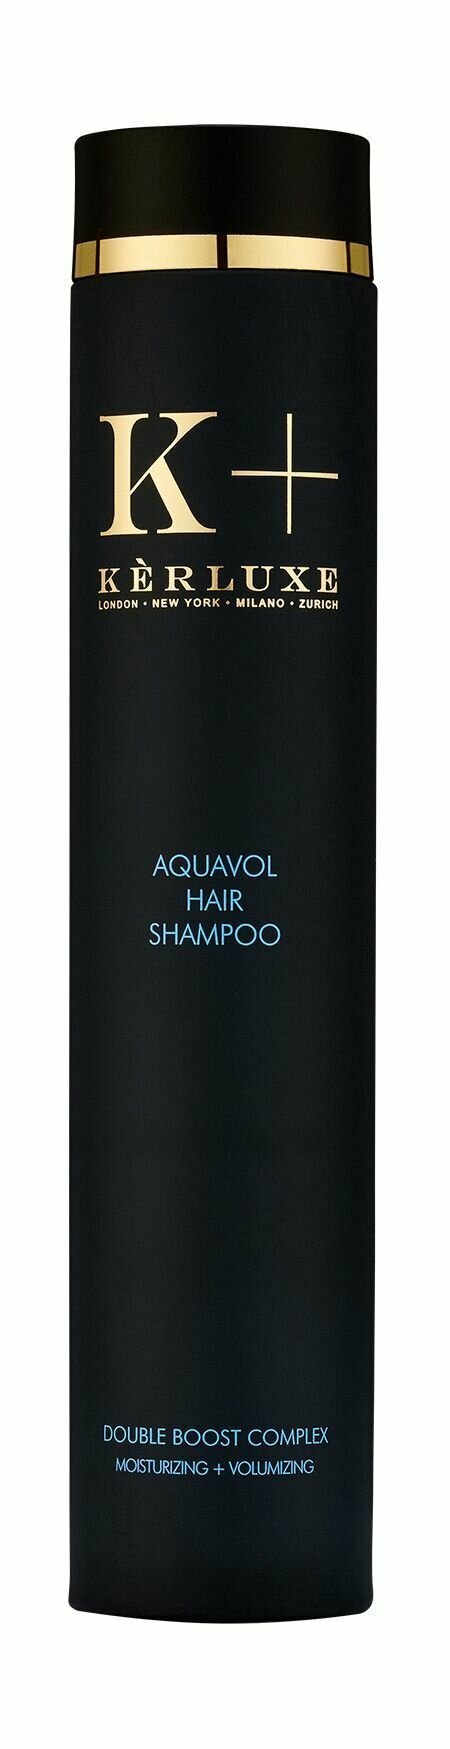 Увлажняющий шампунь для объема волос c аминокислотами овса Kerluxe Aquavol Hair Shampoo